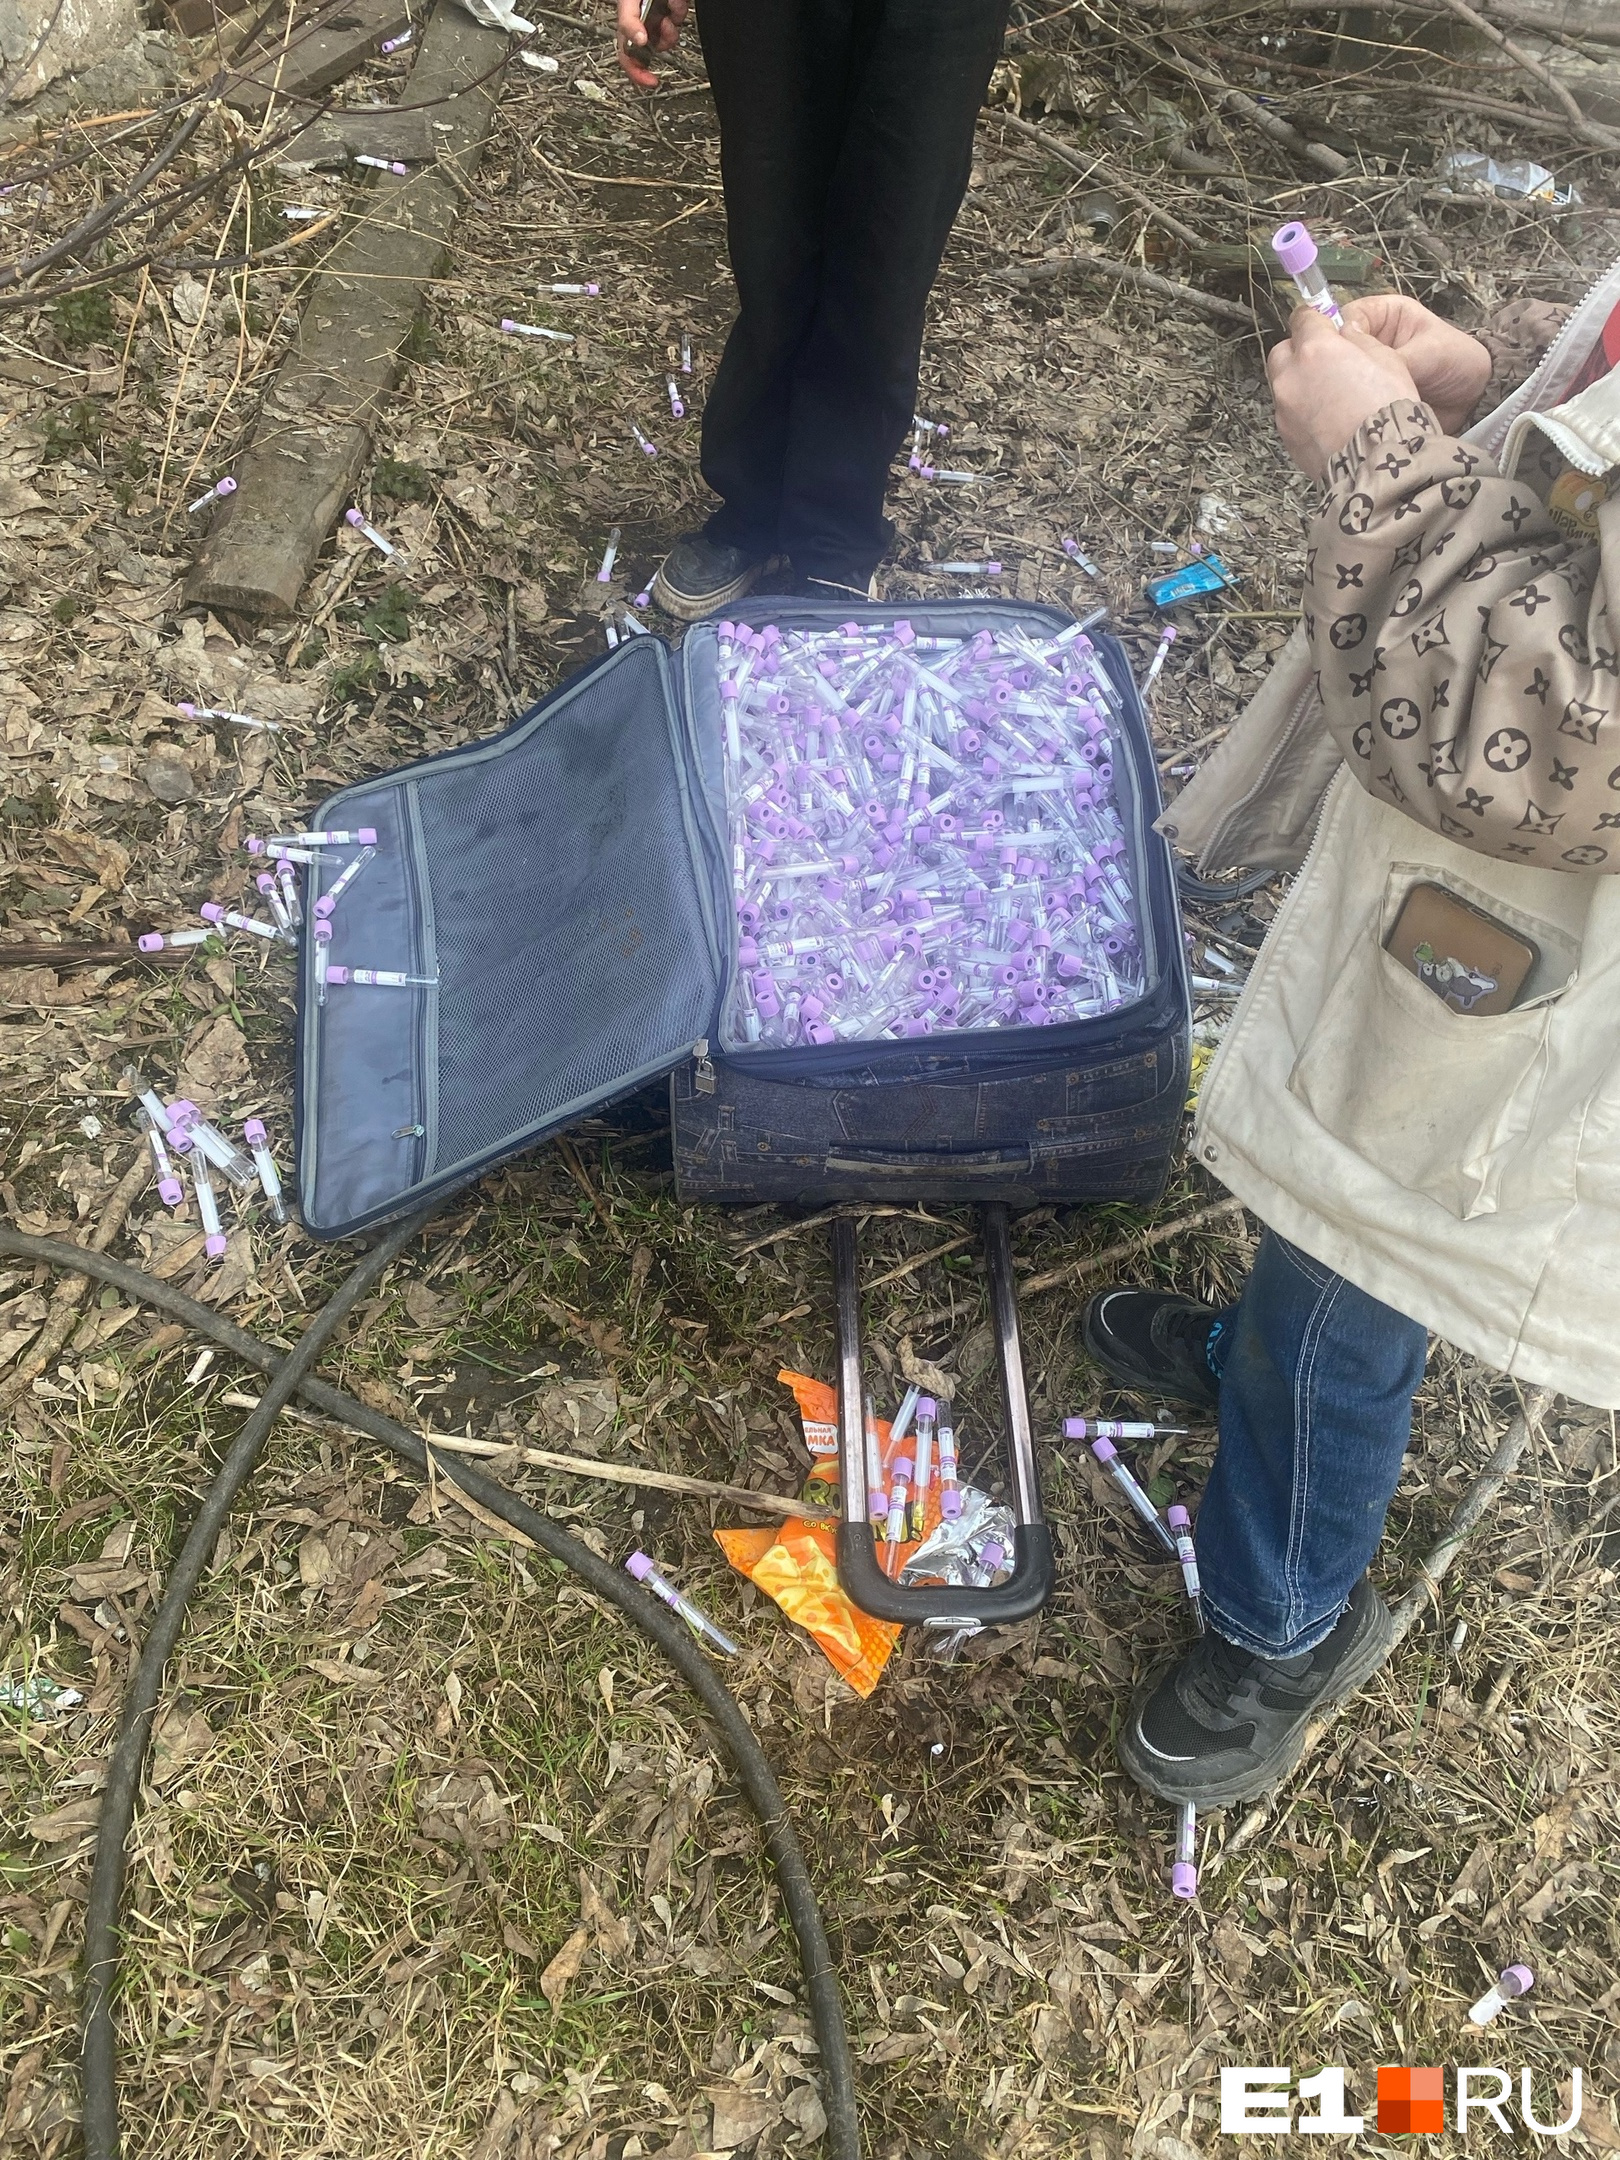 В развалинах на Эльмаше дети нашли чемодан с неприятным сюрпризом внутри: видео